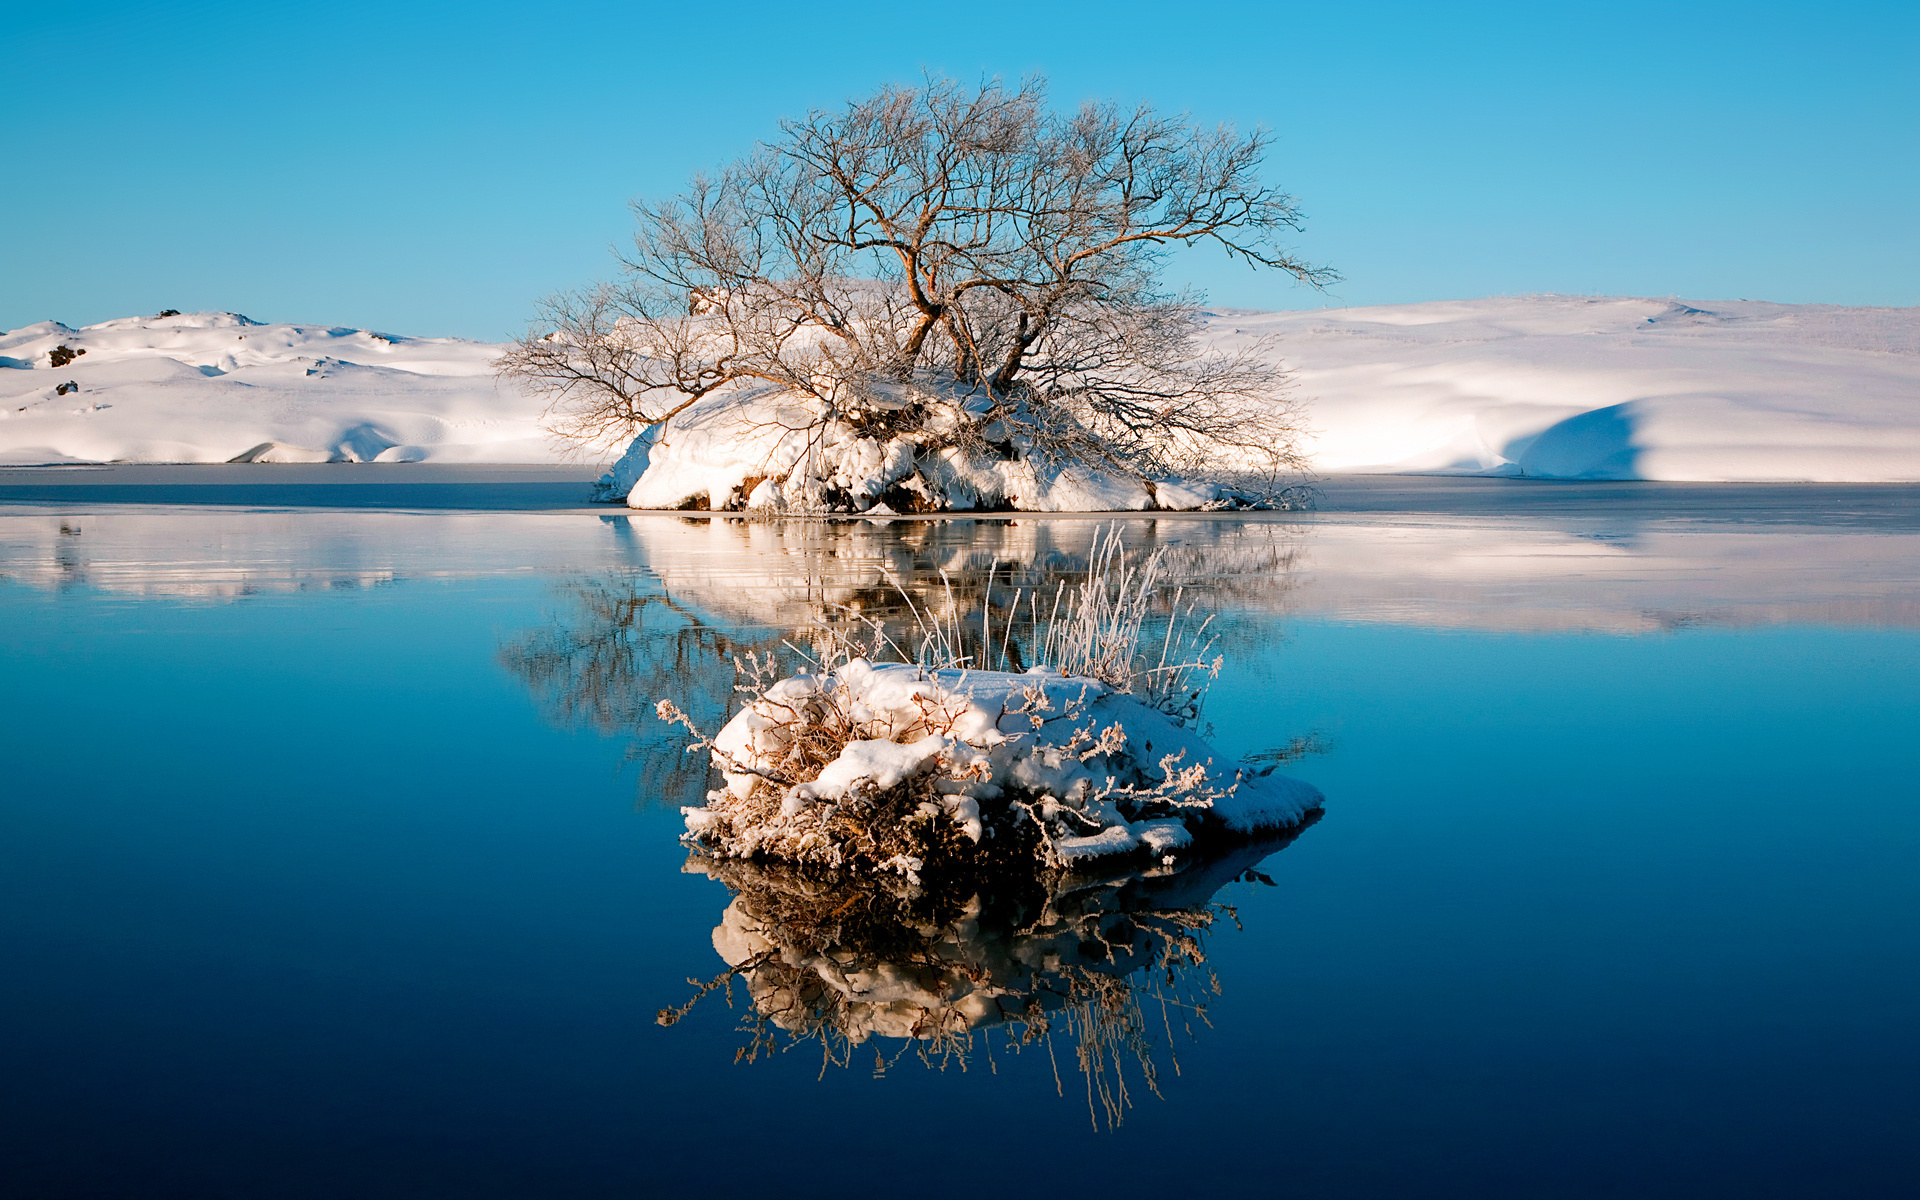 عکس زمینه طبیعت از حاشیه یخ زده دریاچه آبی برای IPhone و SamSung 